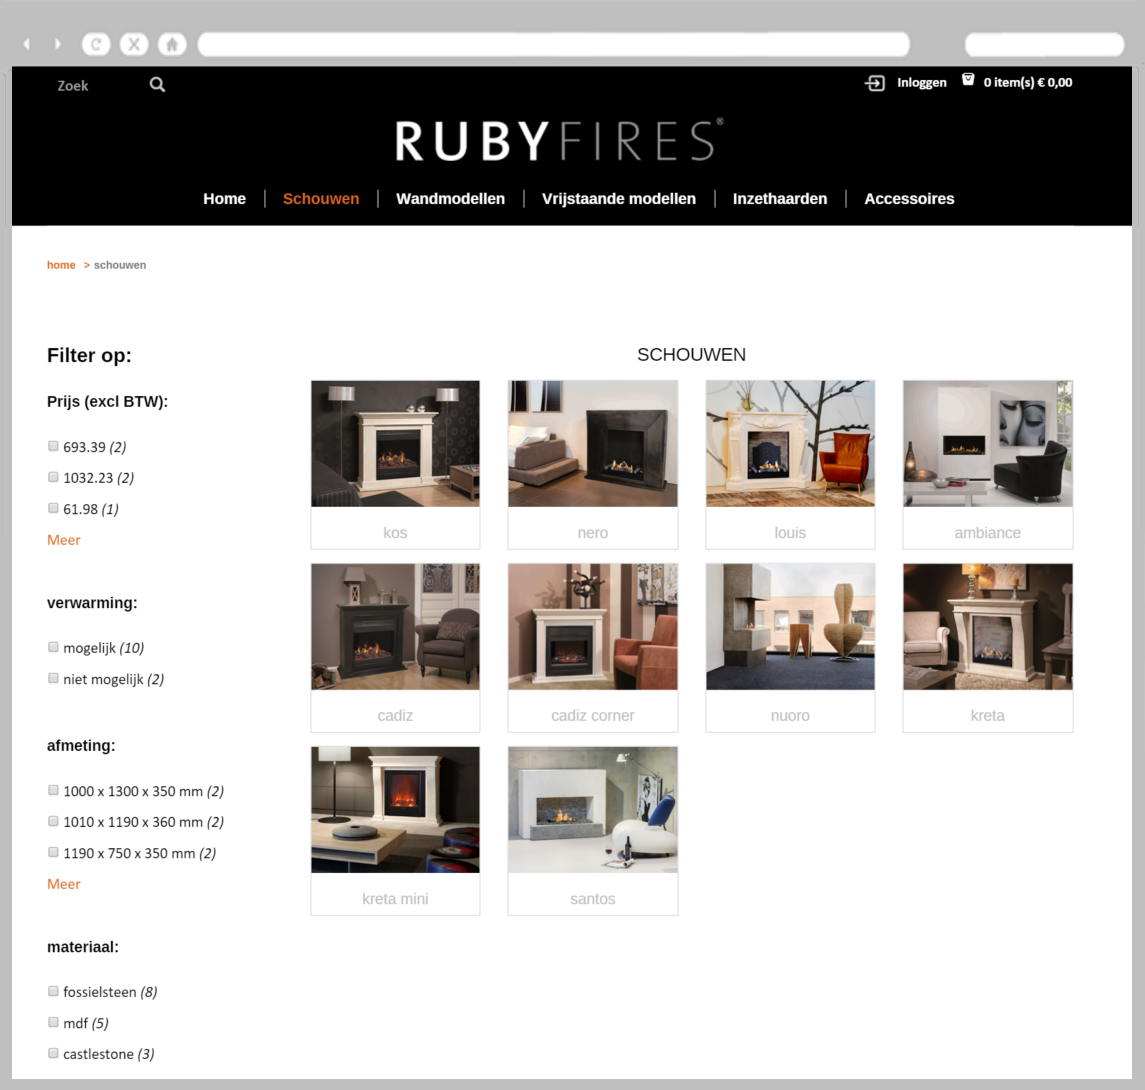 Roby Fires webshop voorbeeld, schouwen overzichtspagina